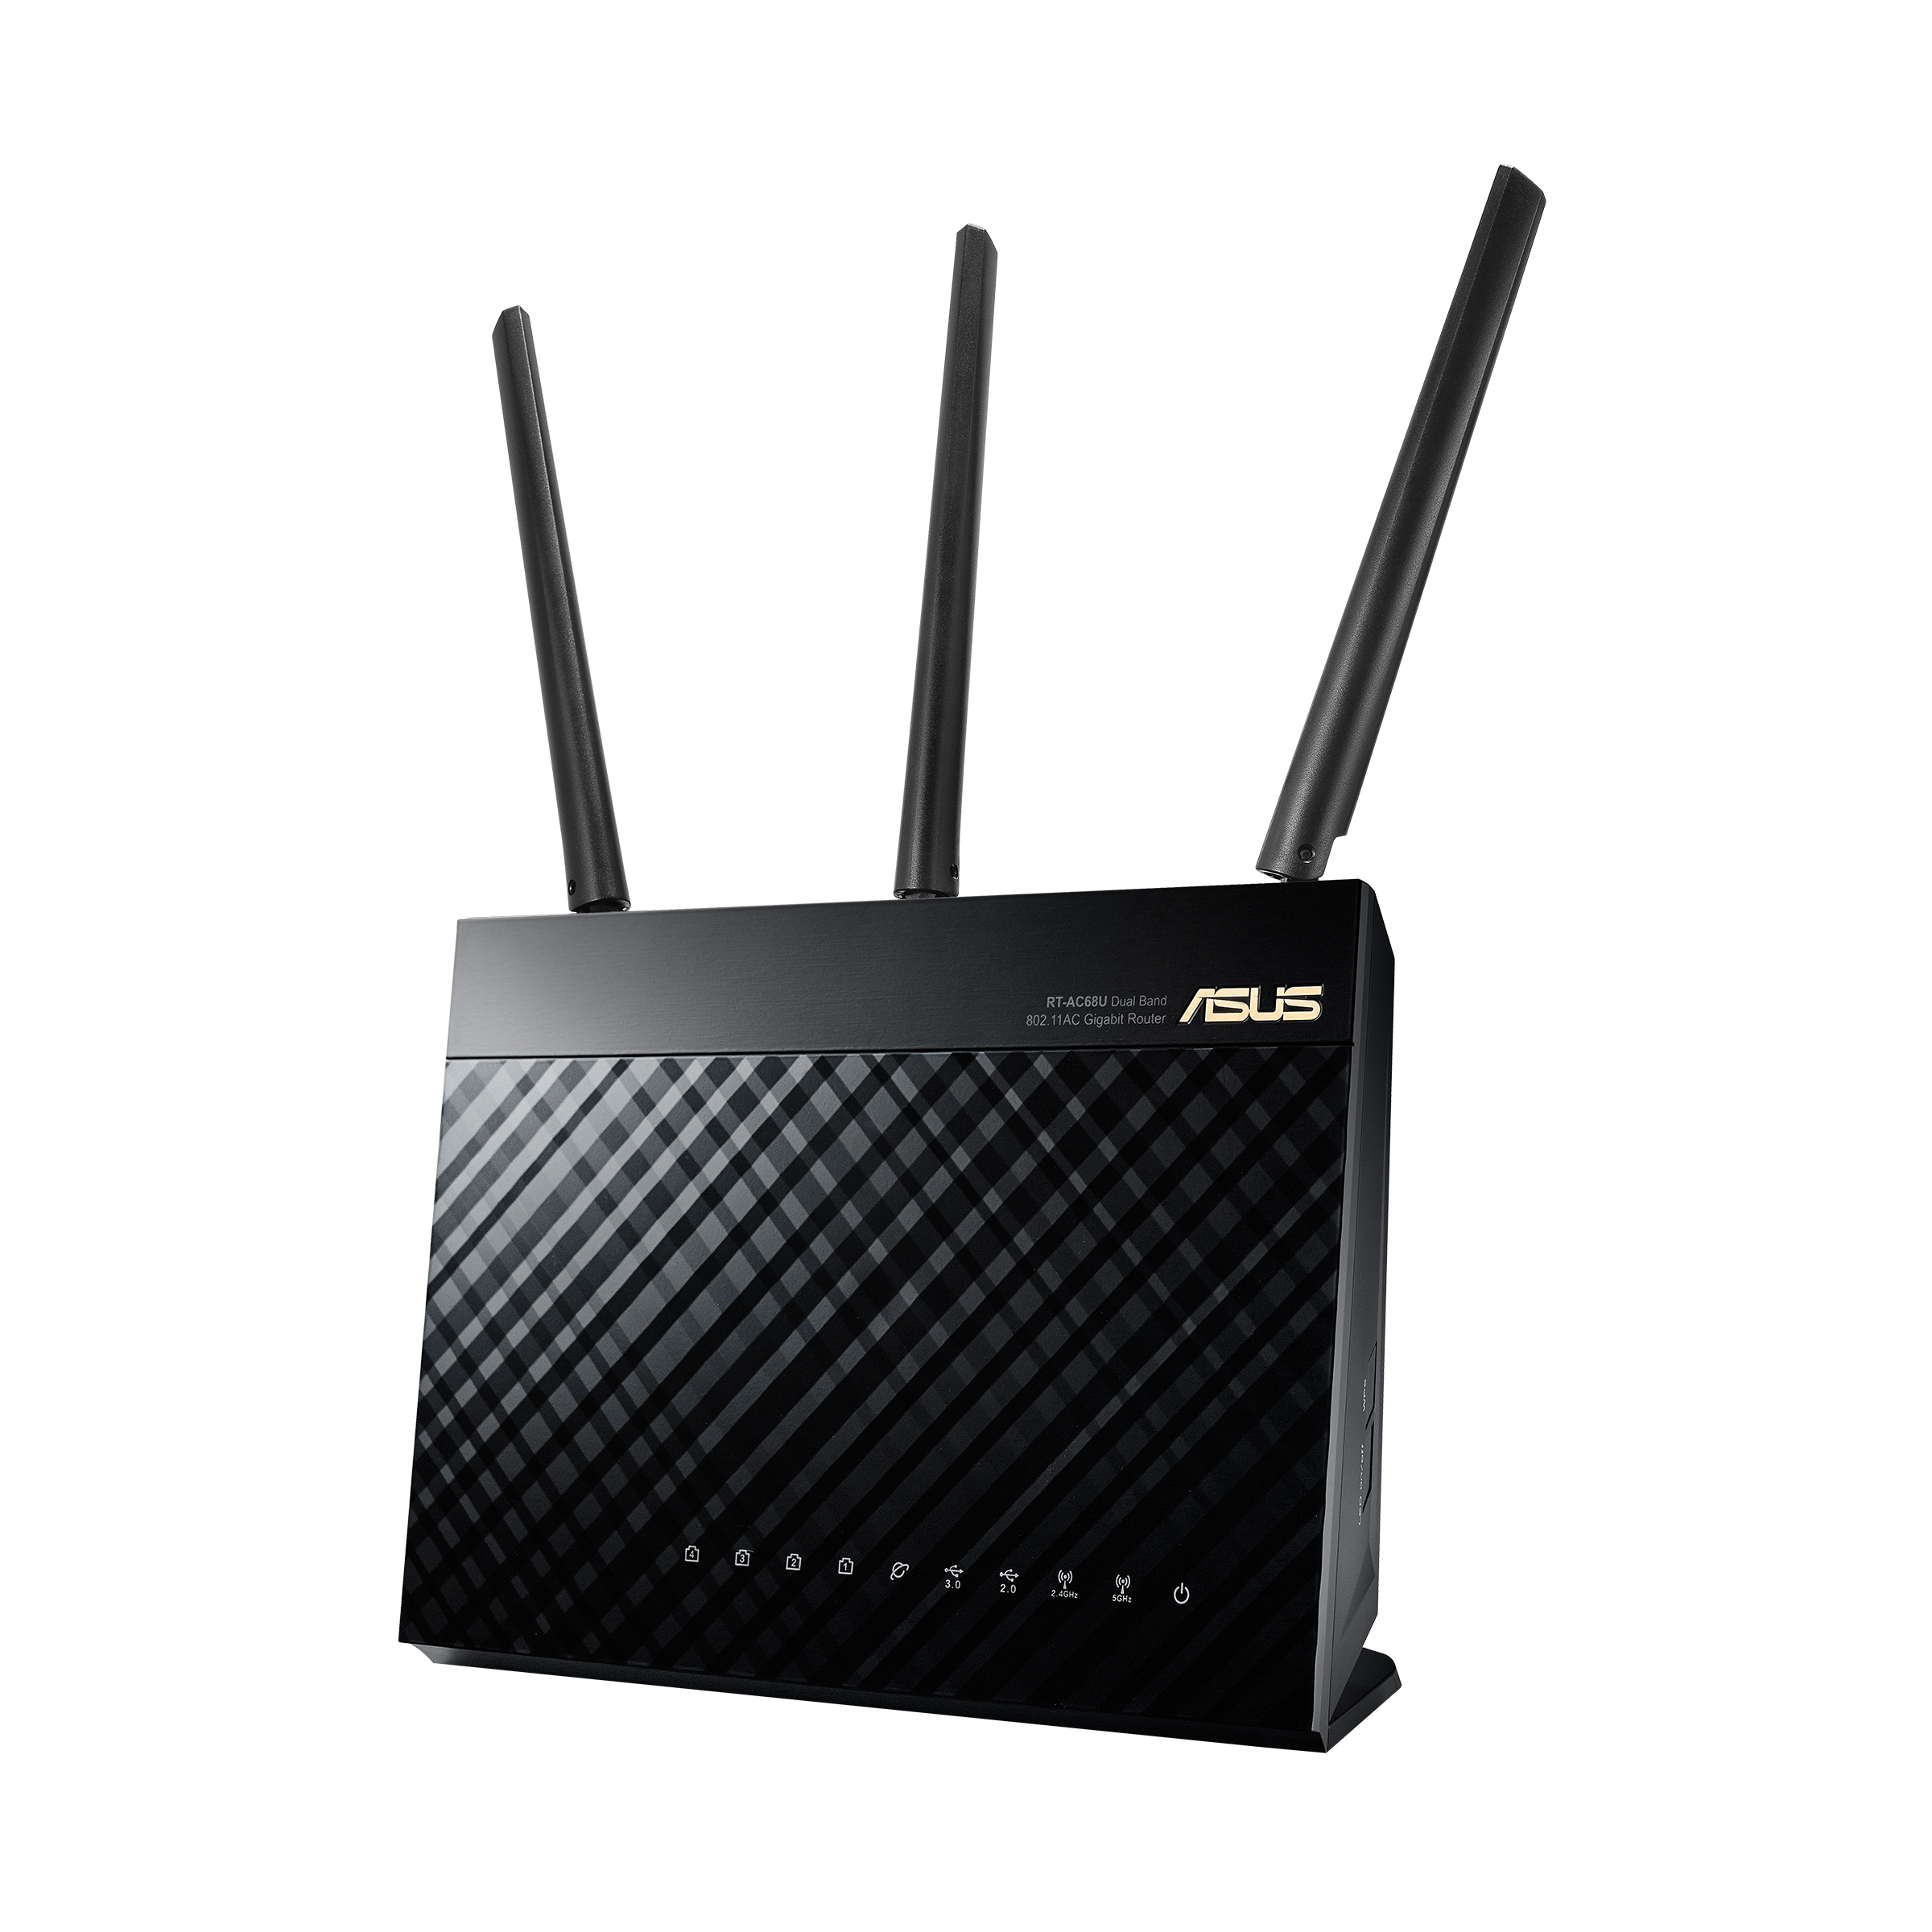 ASUS RT-AC68U Wi-Fi 無線LANルーター